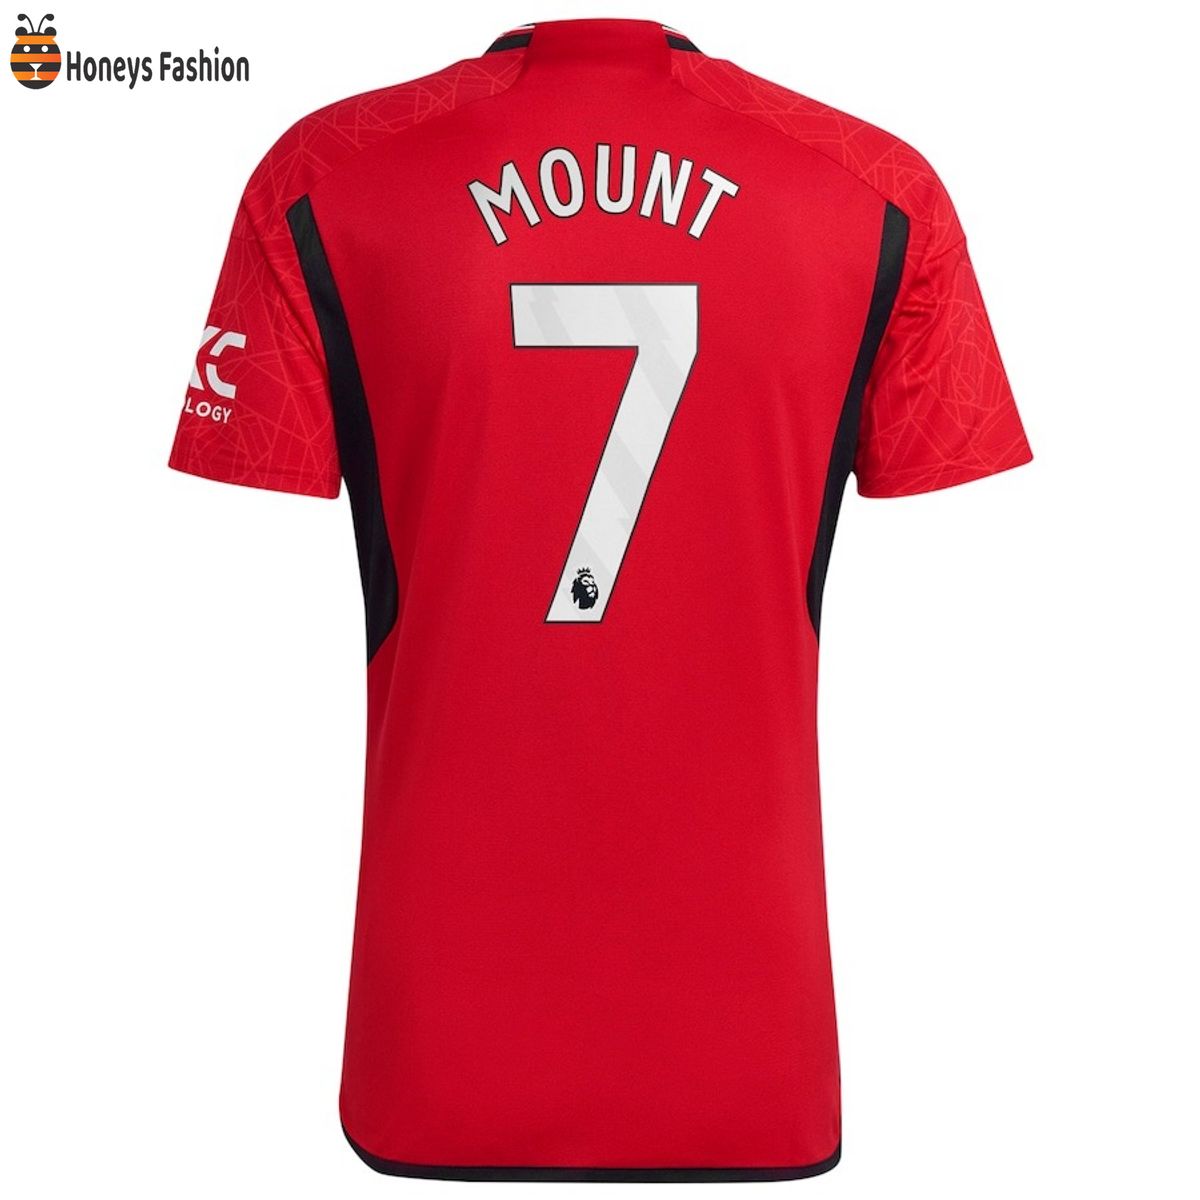 Mount 7 Manchester United Premier League 23-24 Jersey